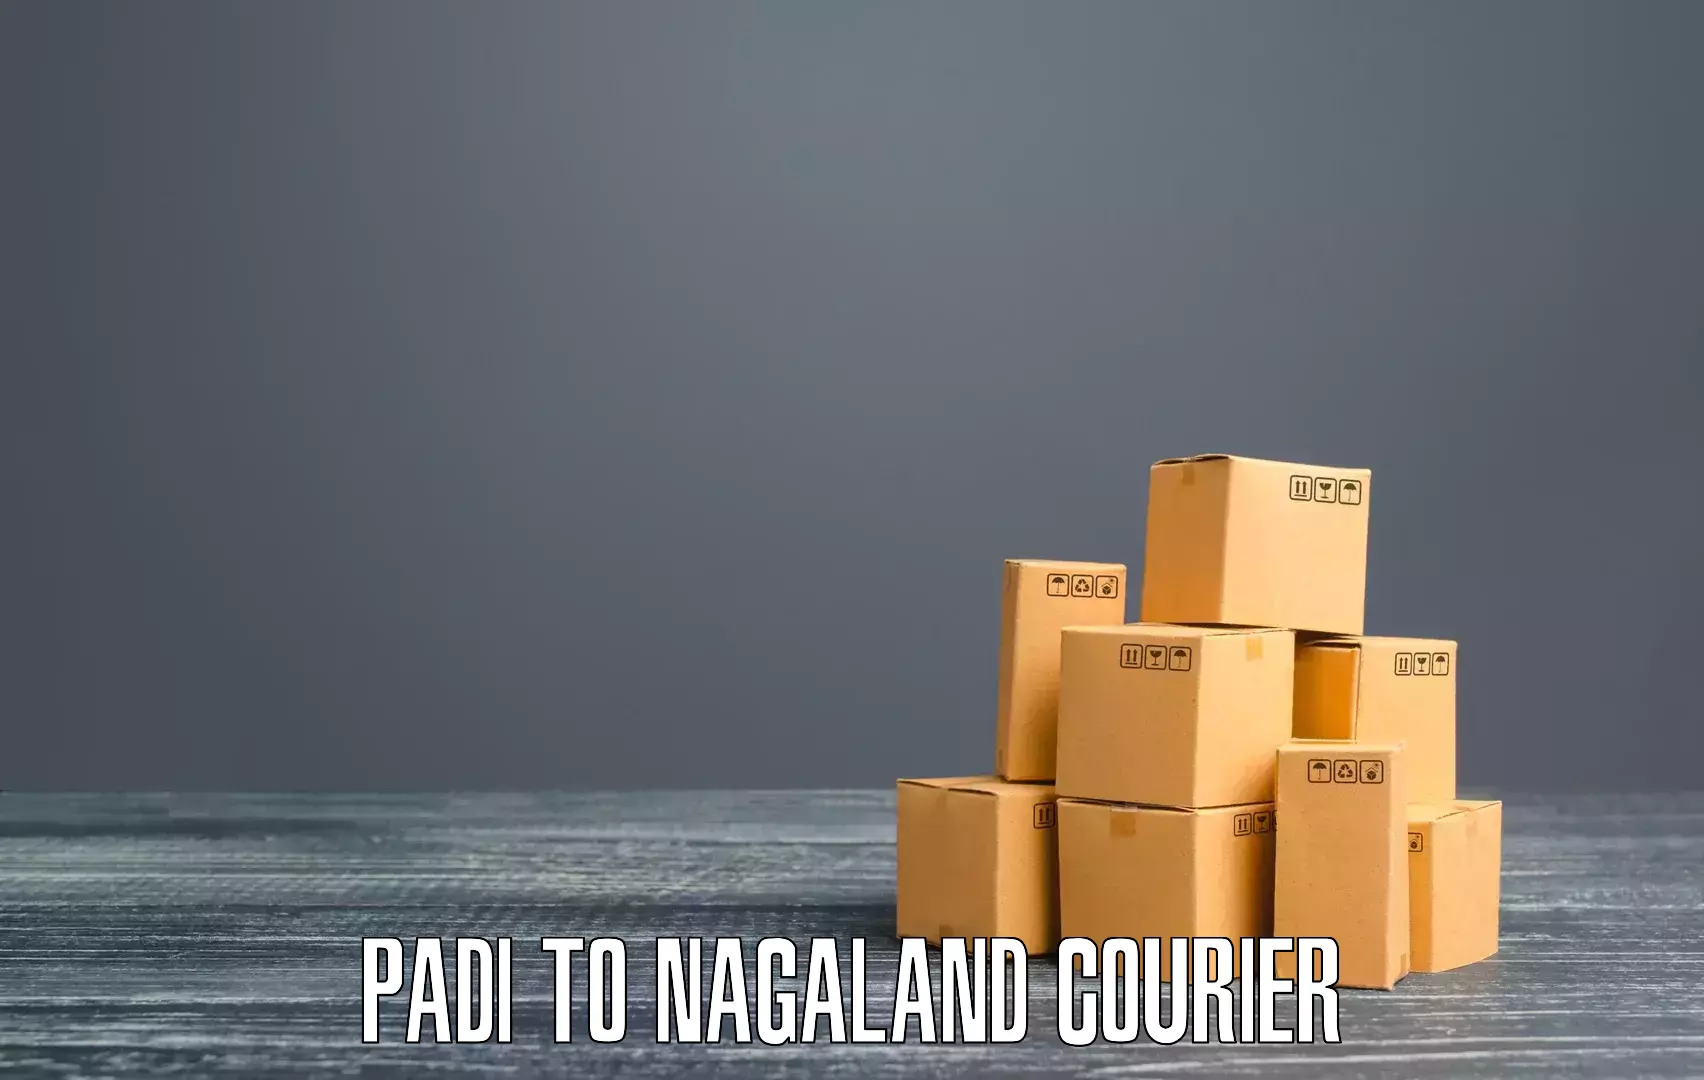 Global shipping networks Padi to Nagaland